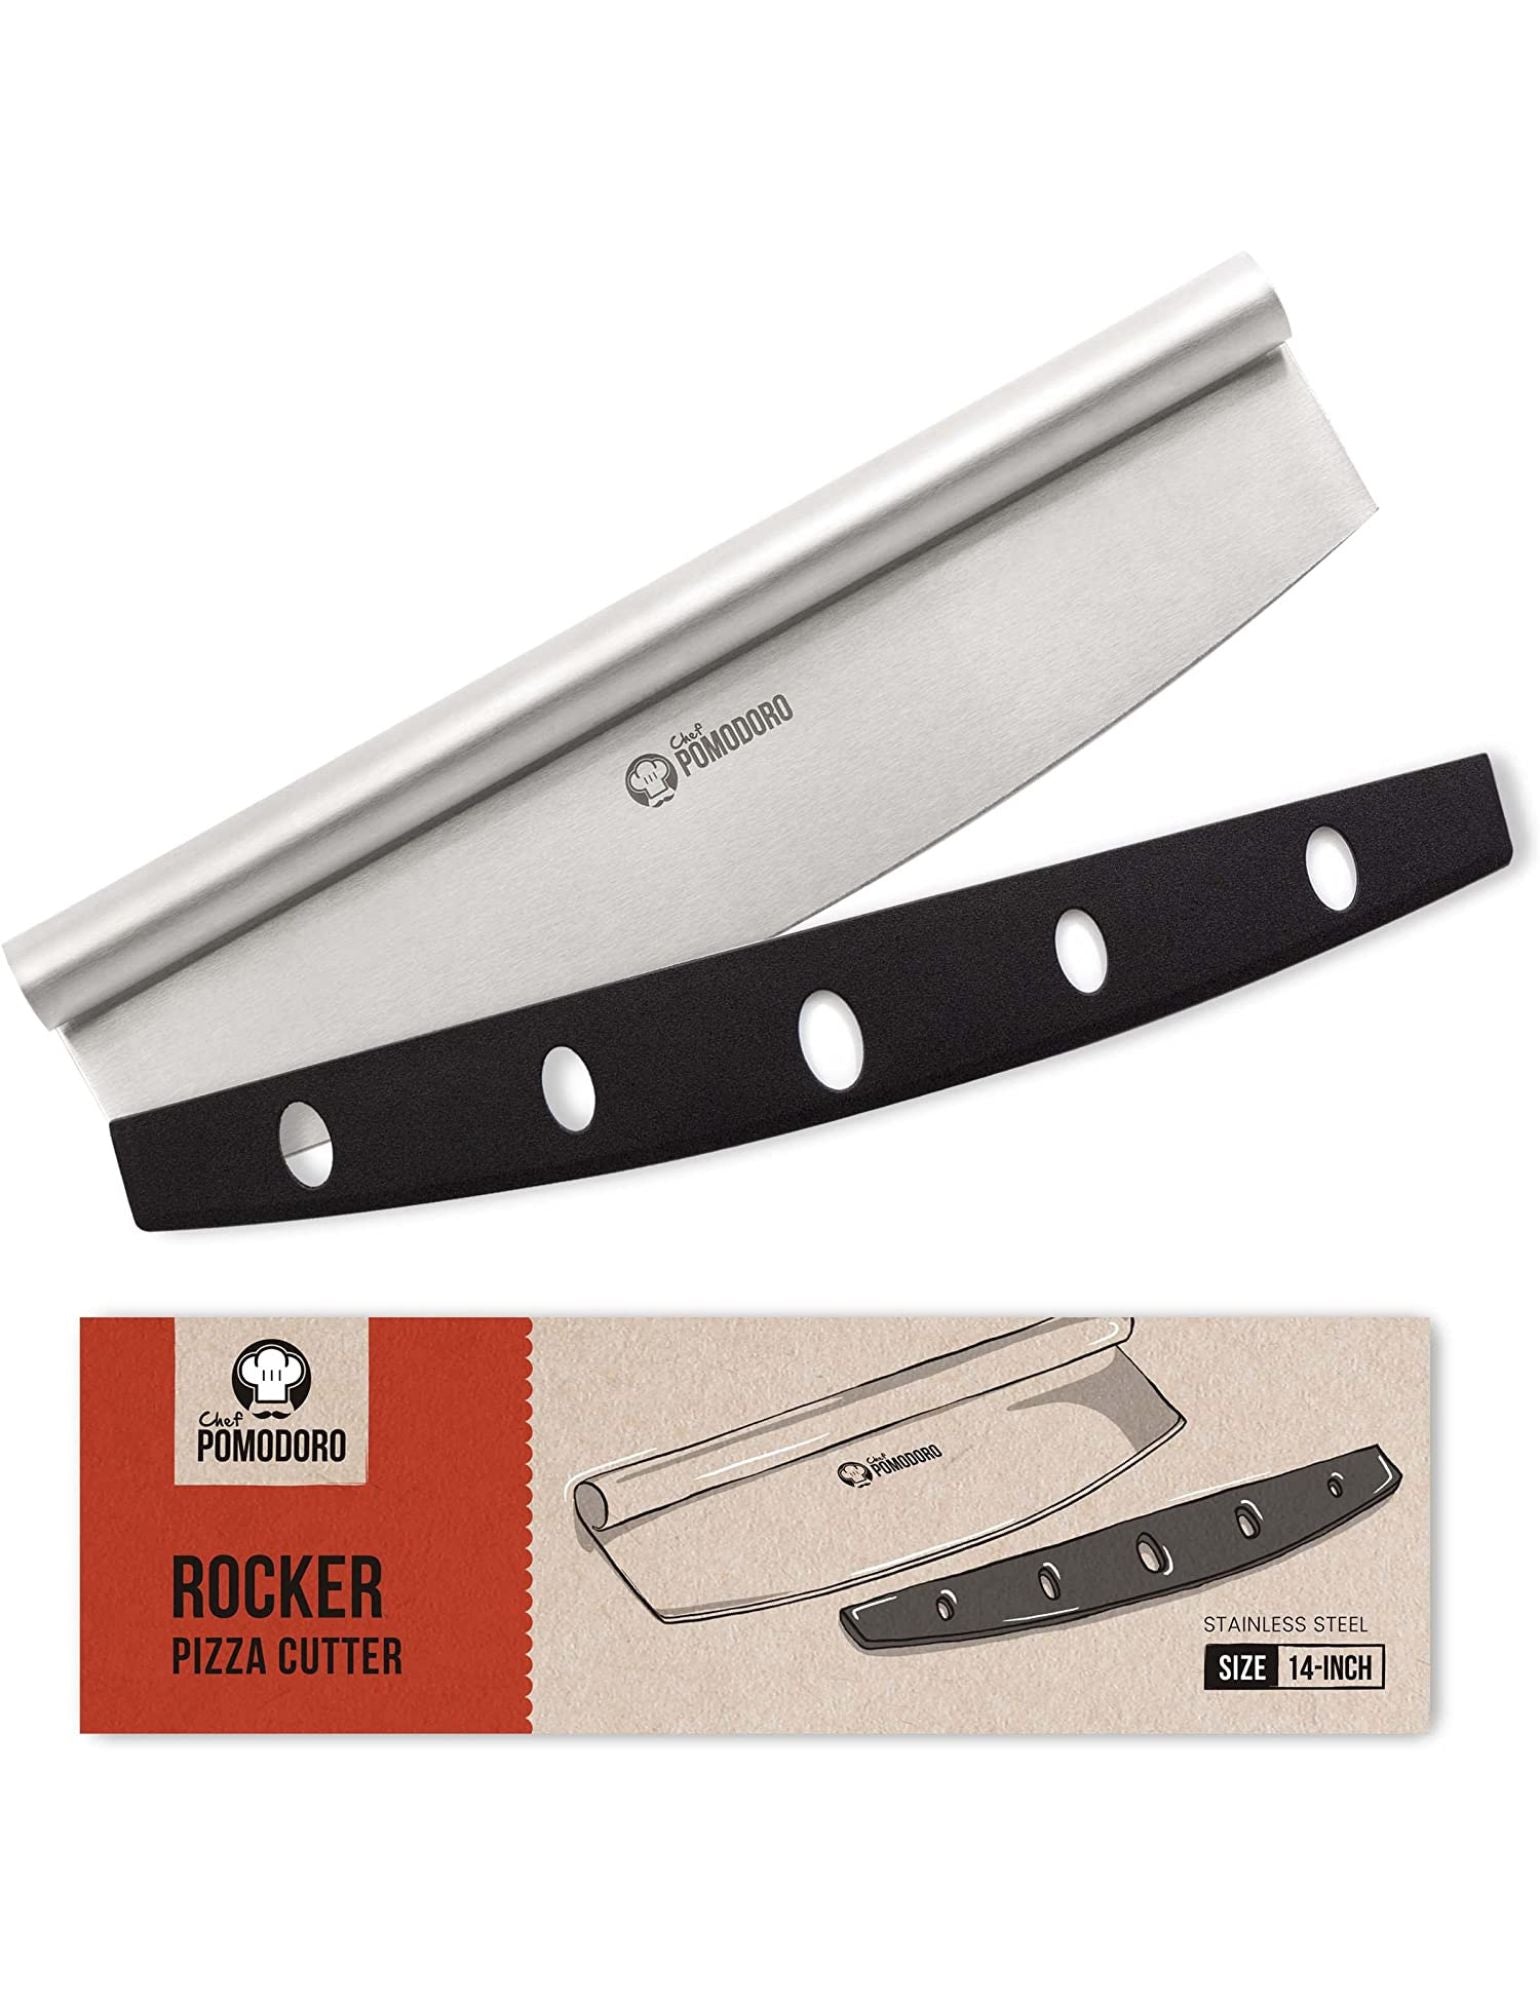 Pizza Cutter Rocker Knife - Multipurpose Mezzaluna Chopper